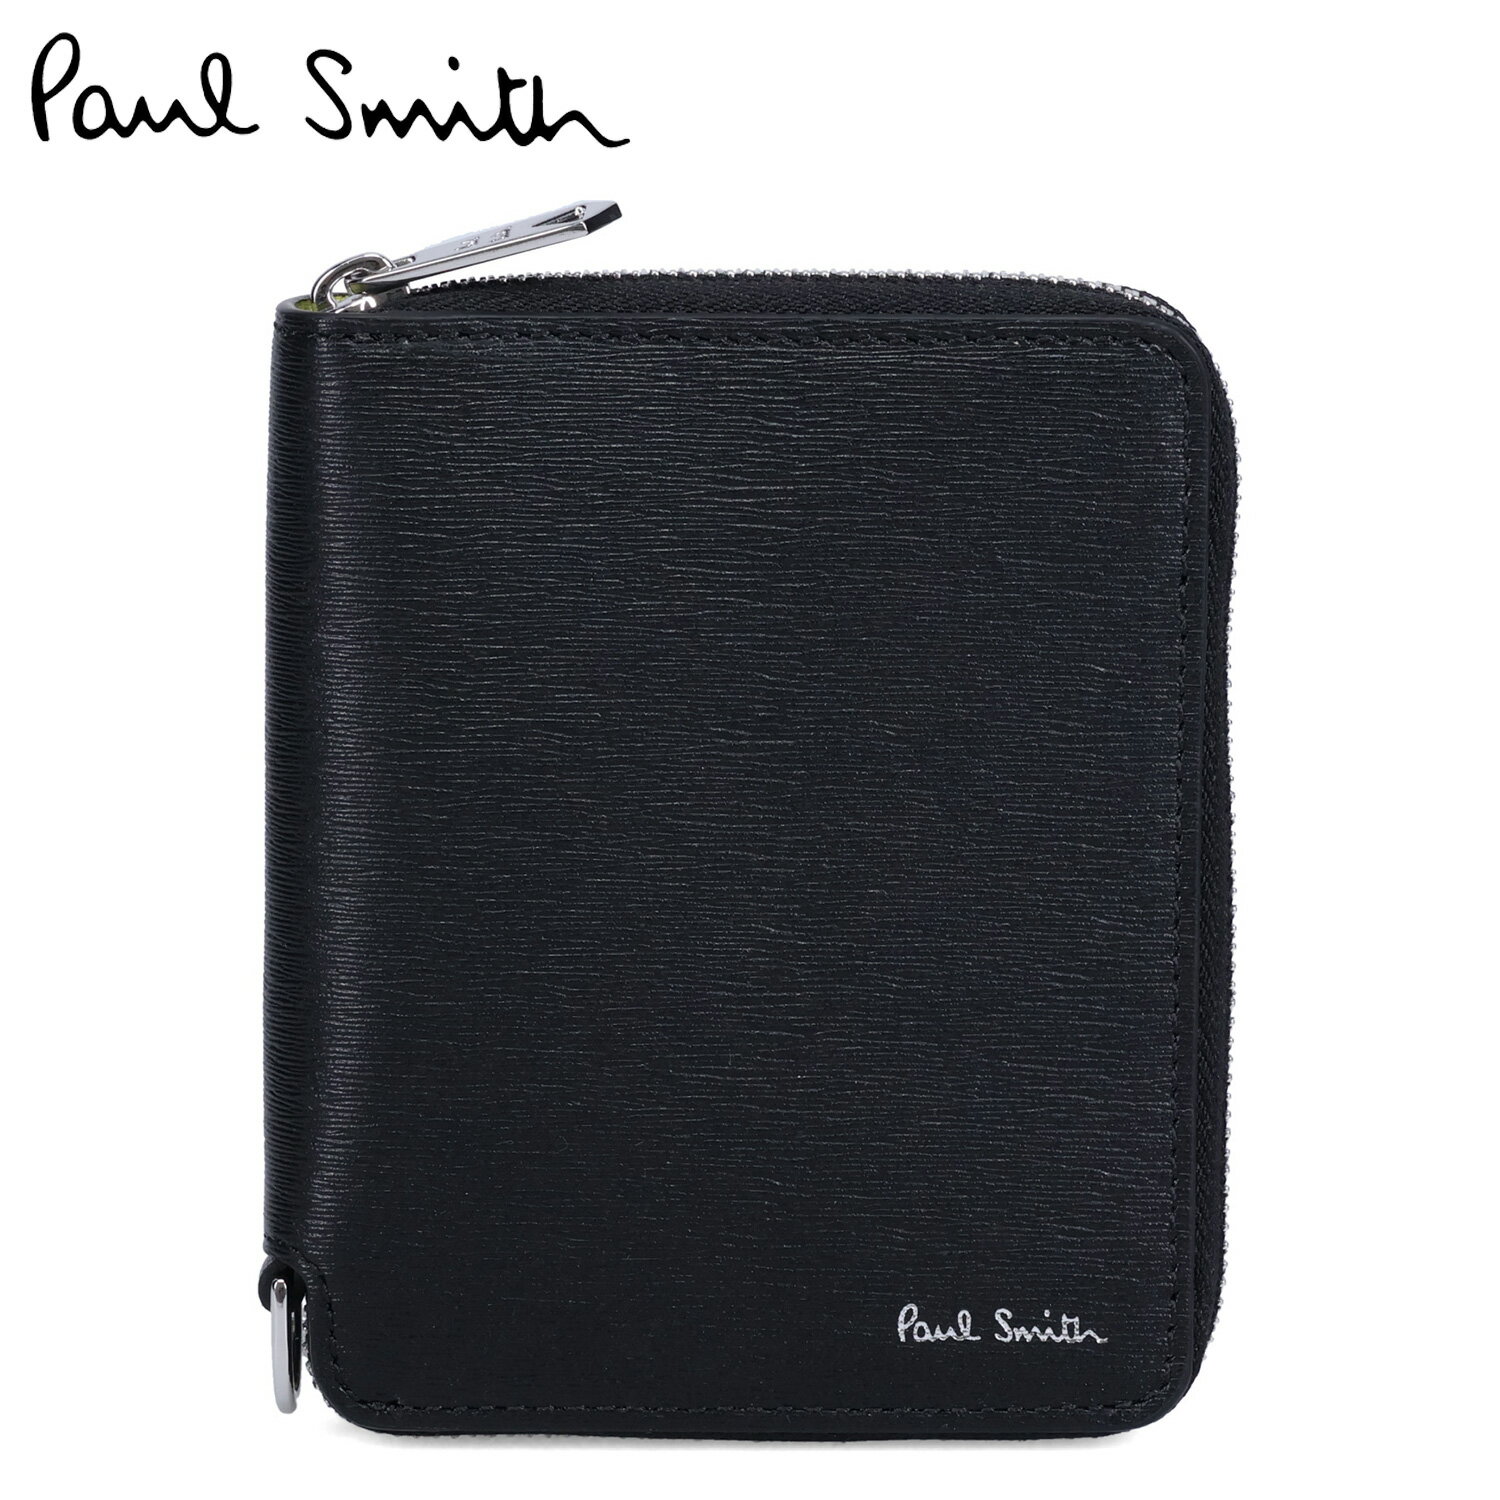 ポール・スミス 革二つ折り財布 メンズ ポールスミス Paul Smith 財布 二つ折り財布 メンズ 本革 ラウンドファスナー WALLET ZIP BFOLD ブラック 黒 M1A-6702-KSTRGS